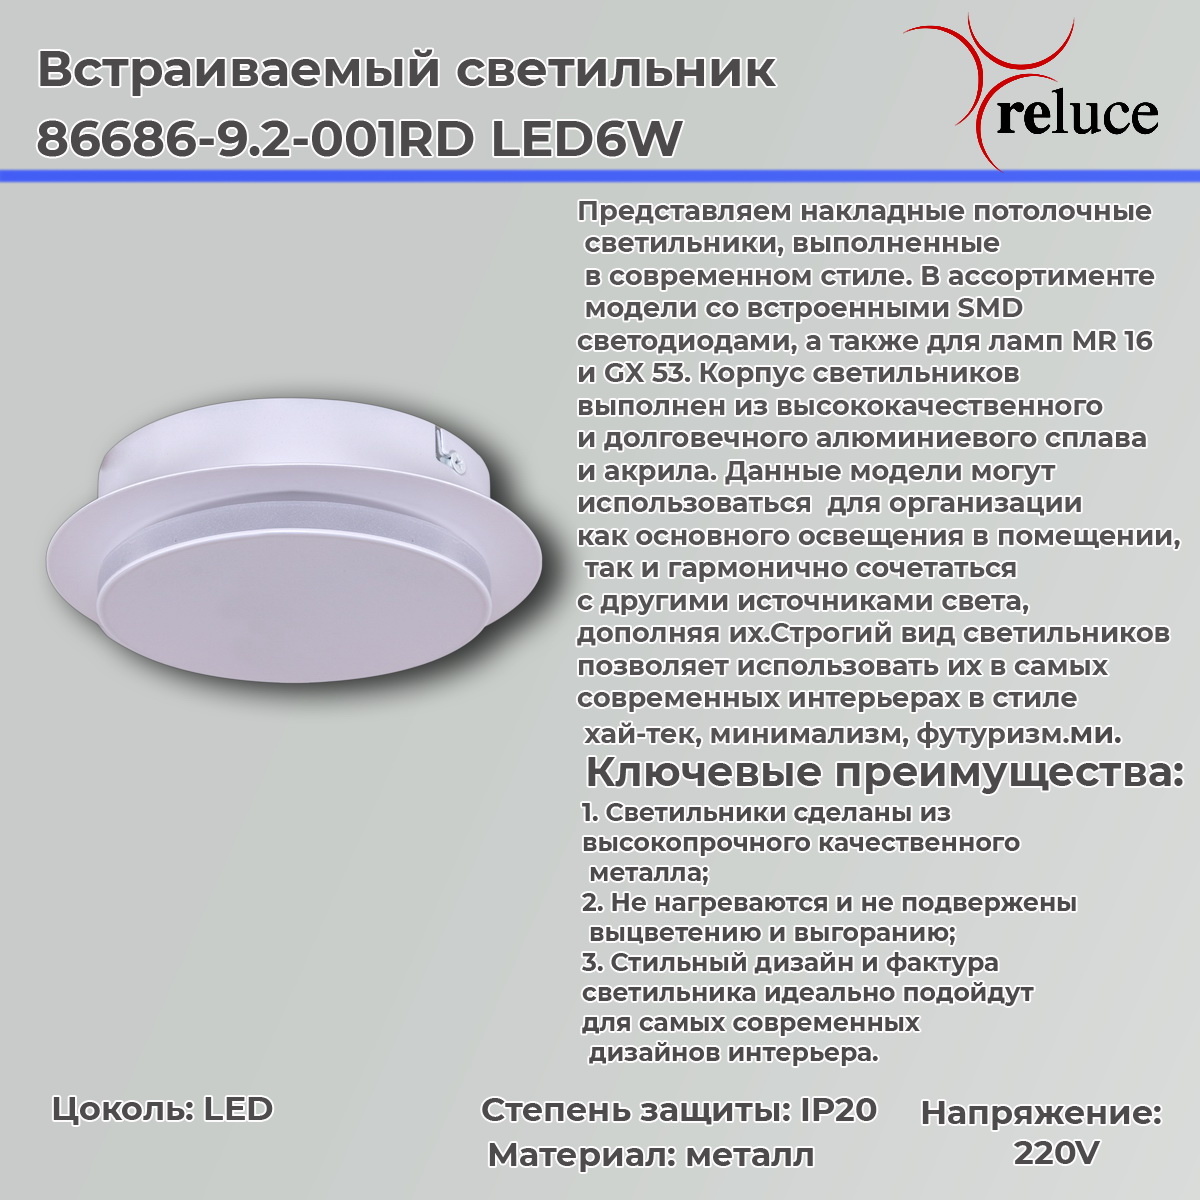 Настенно-потолочный светильник Reluce 86686-9.2-001RD LED6W WT